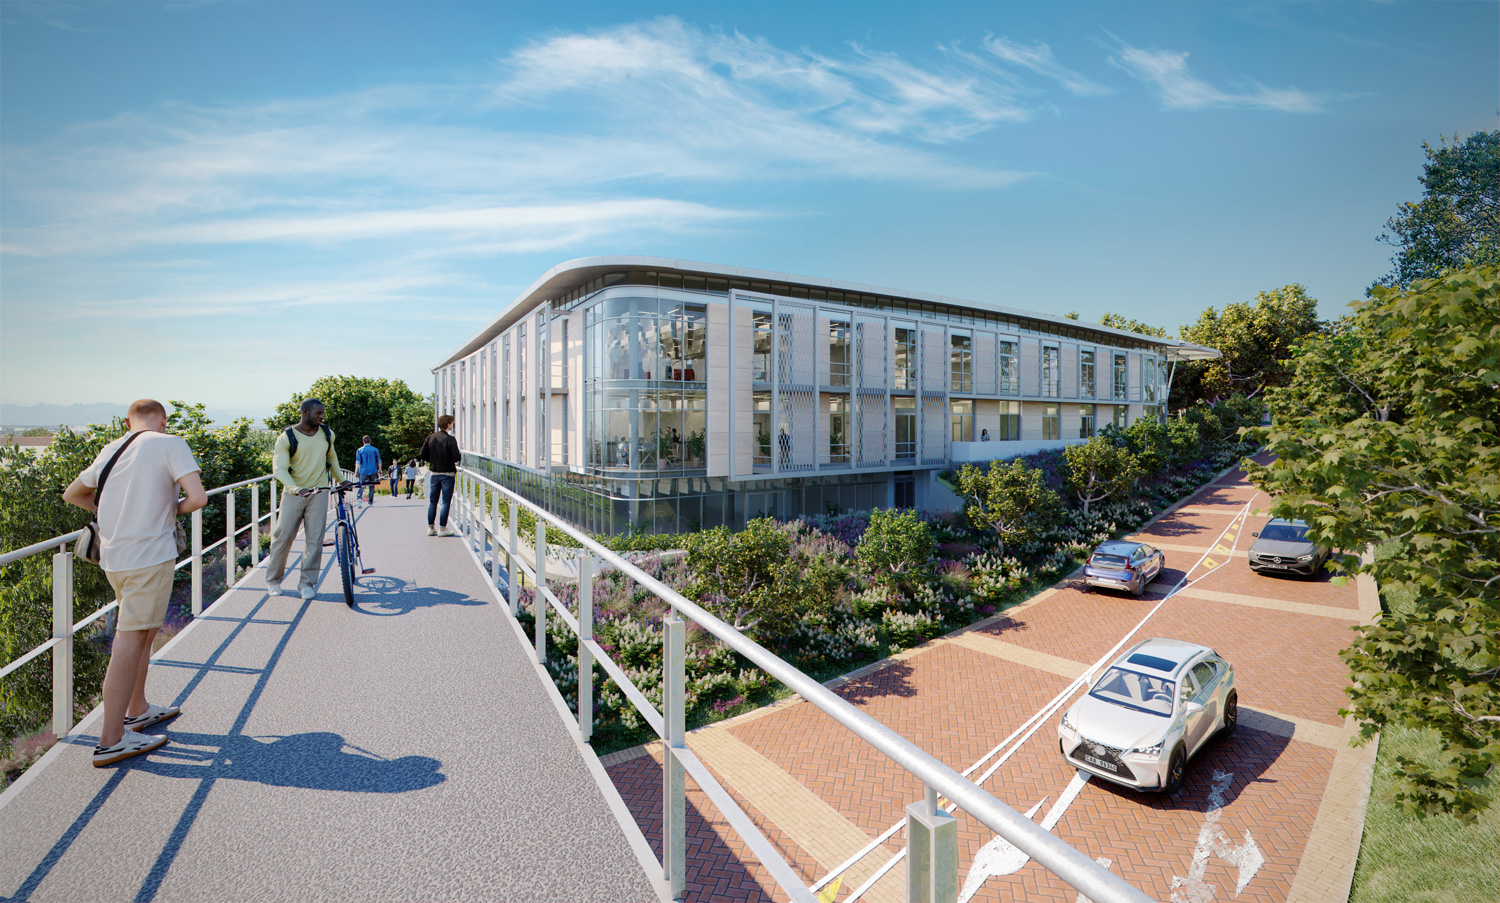 New d-school UCT building